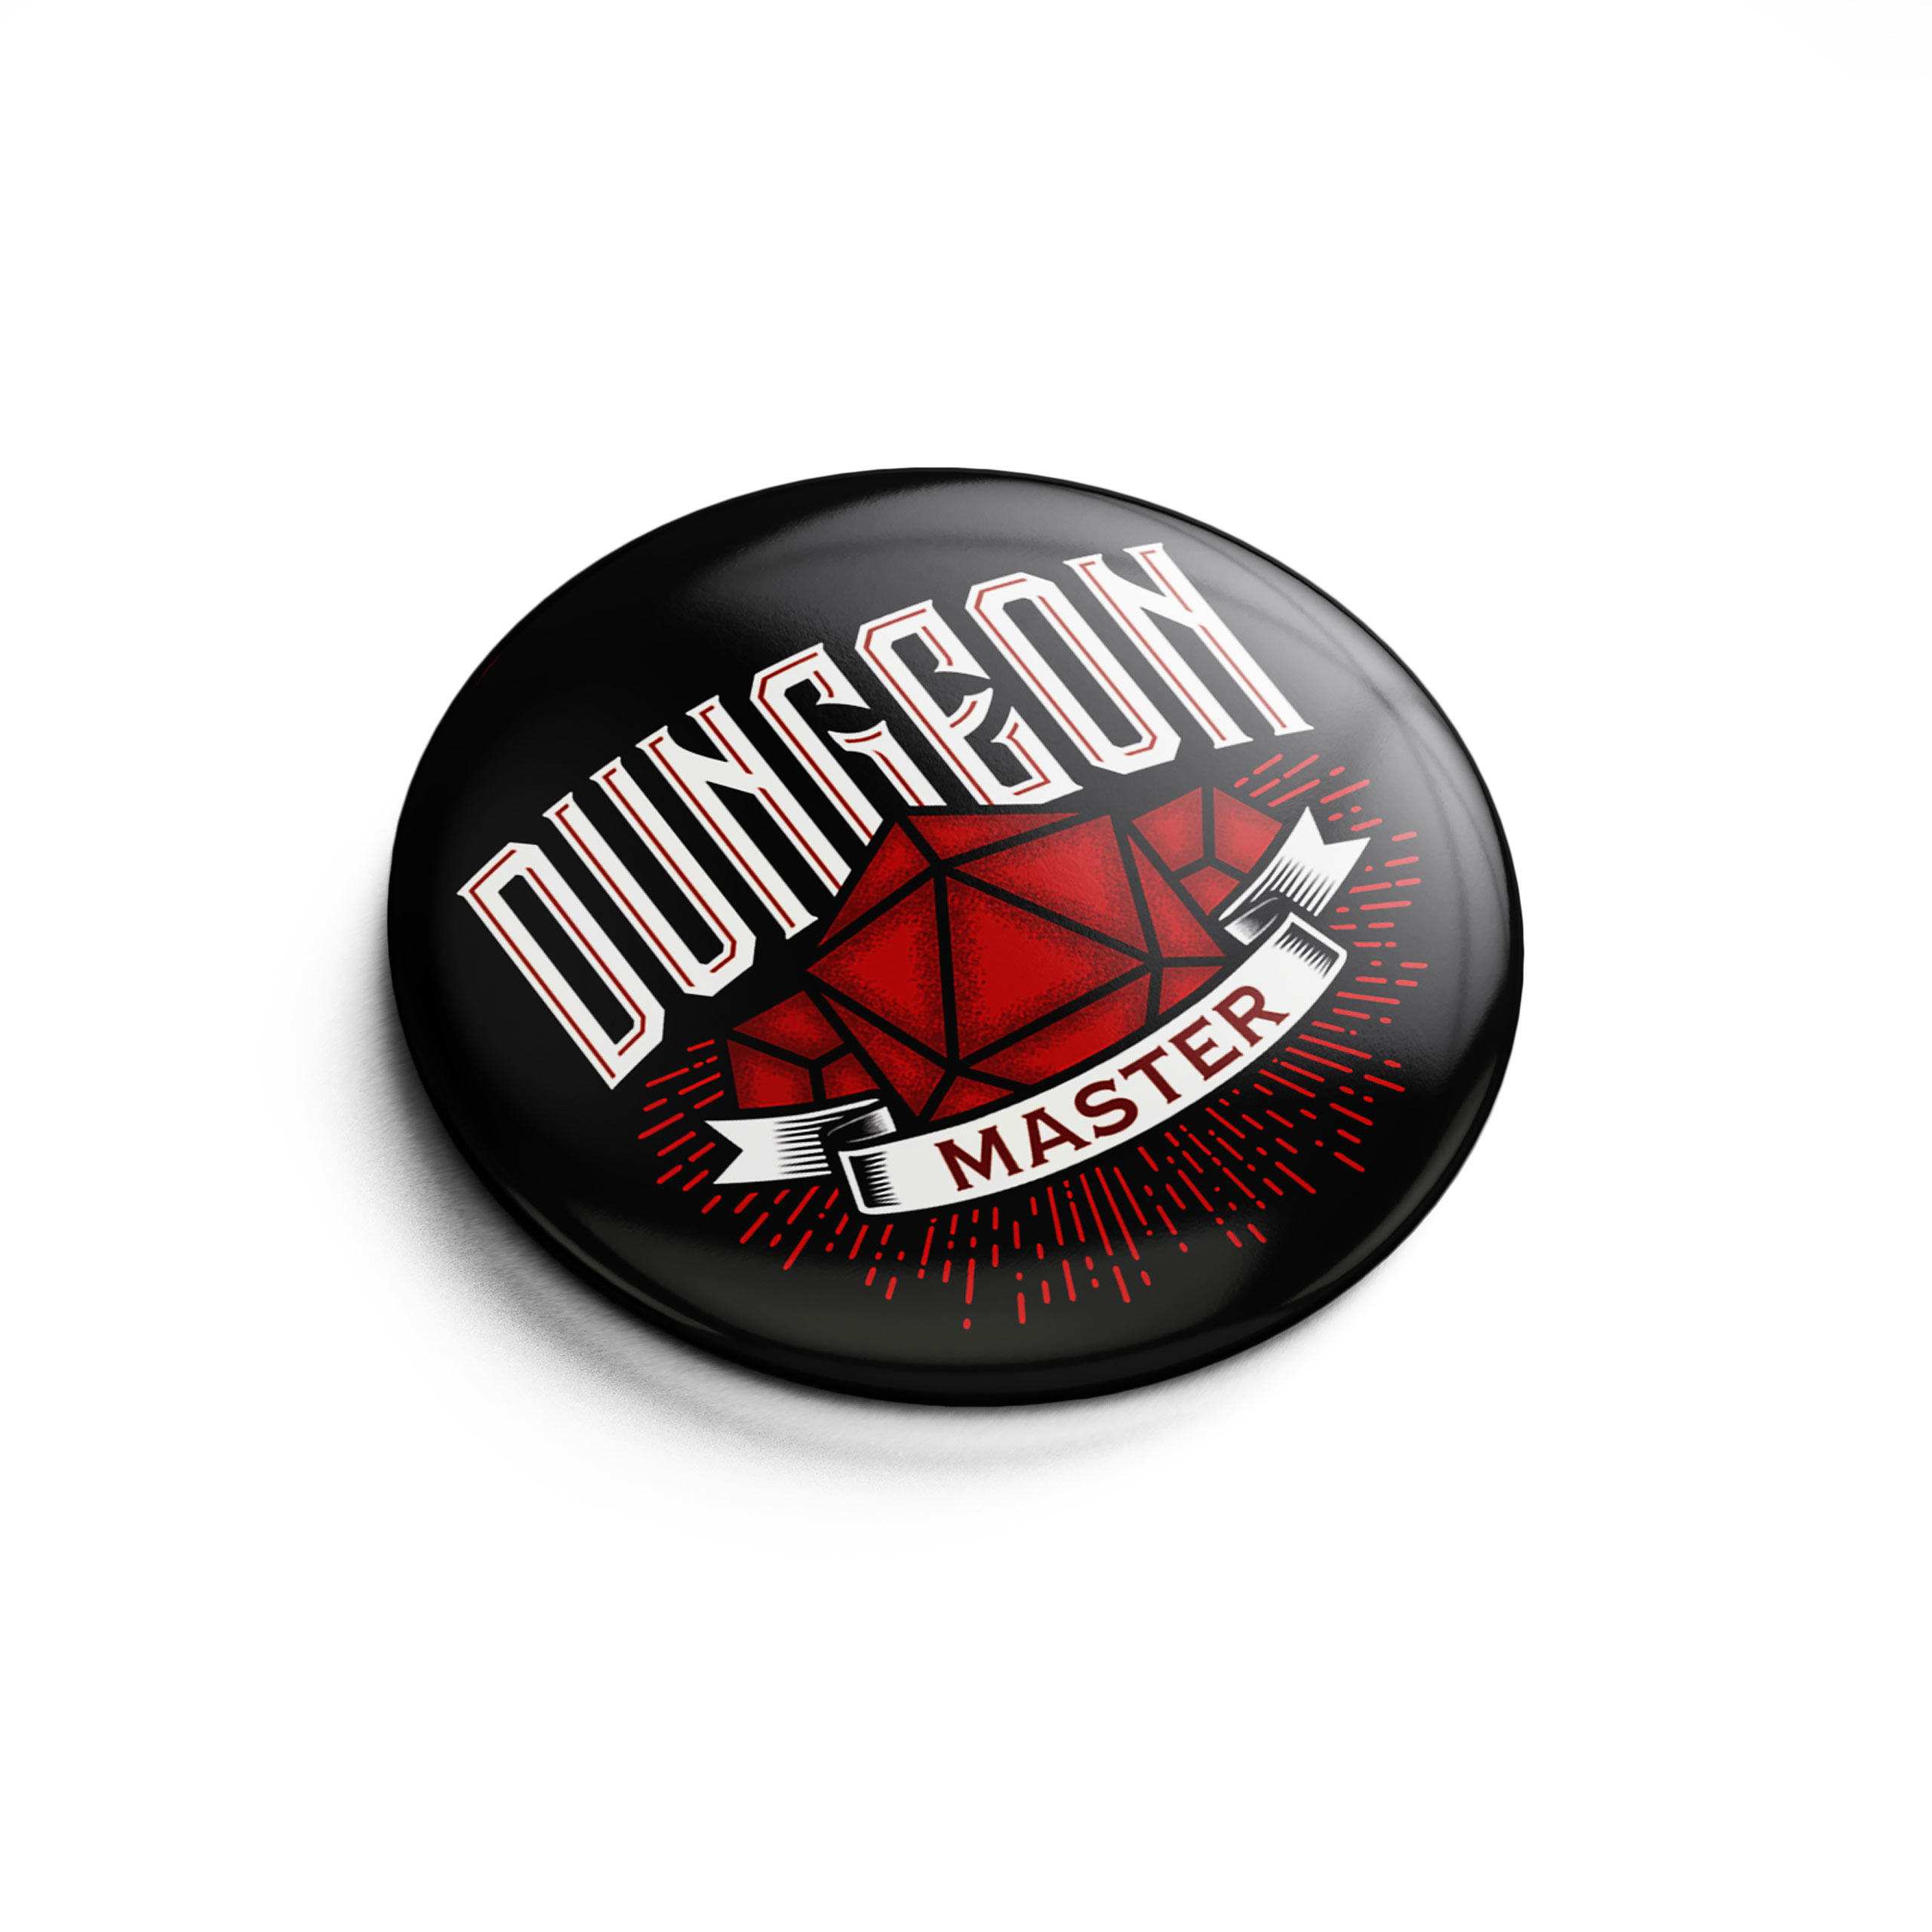 Dungeon Master Button für D&D Fans